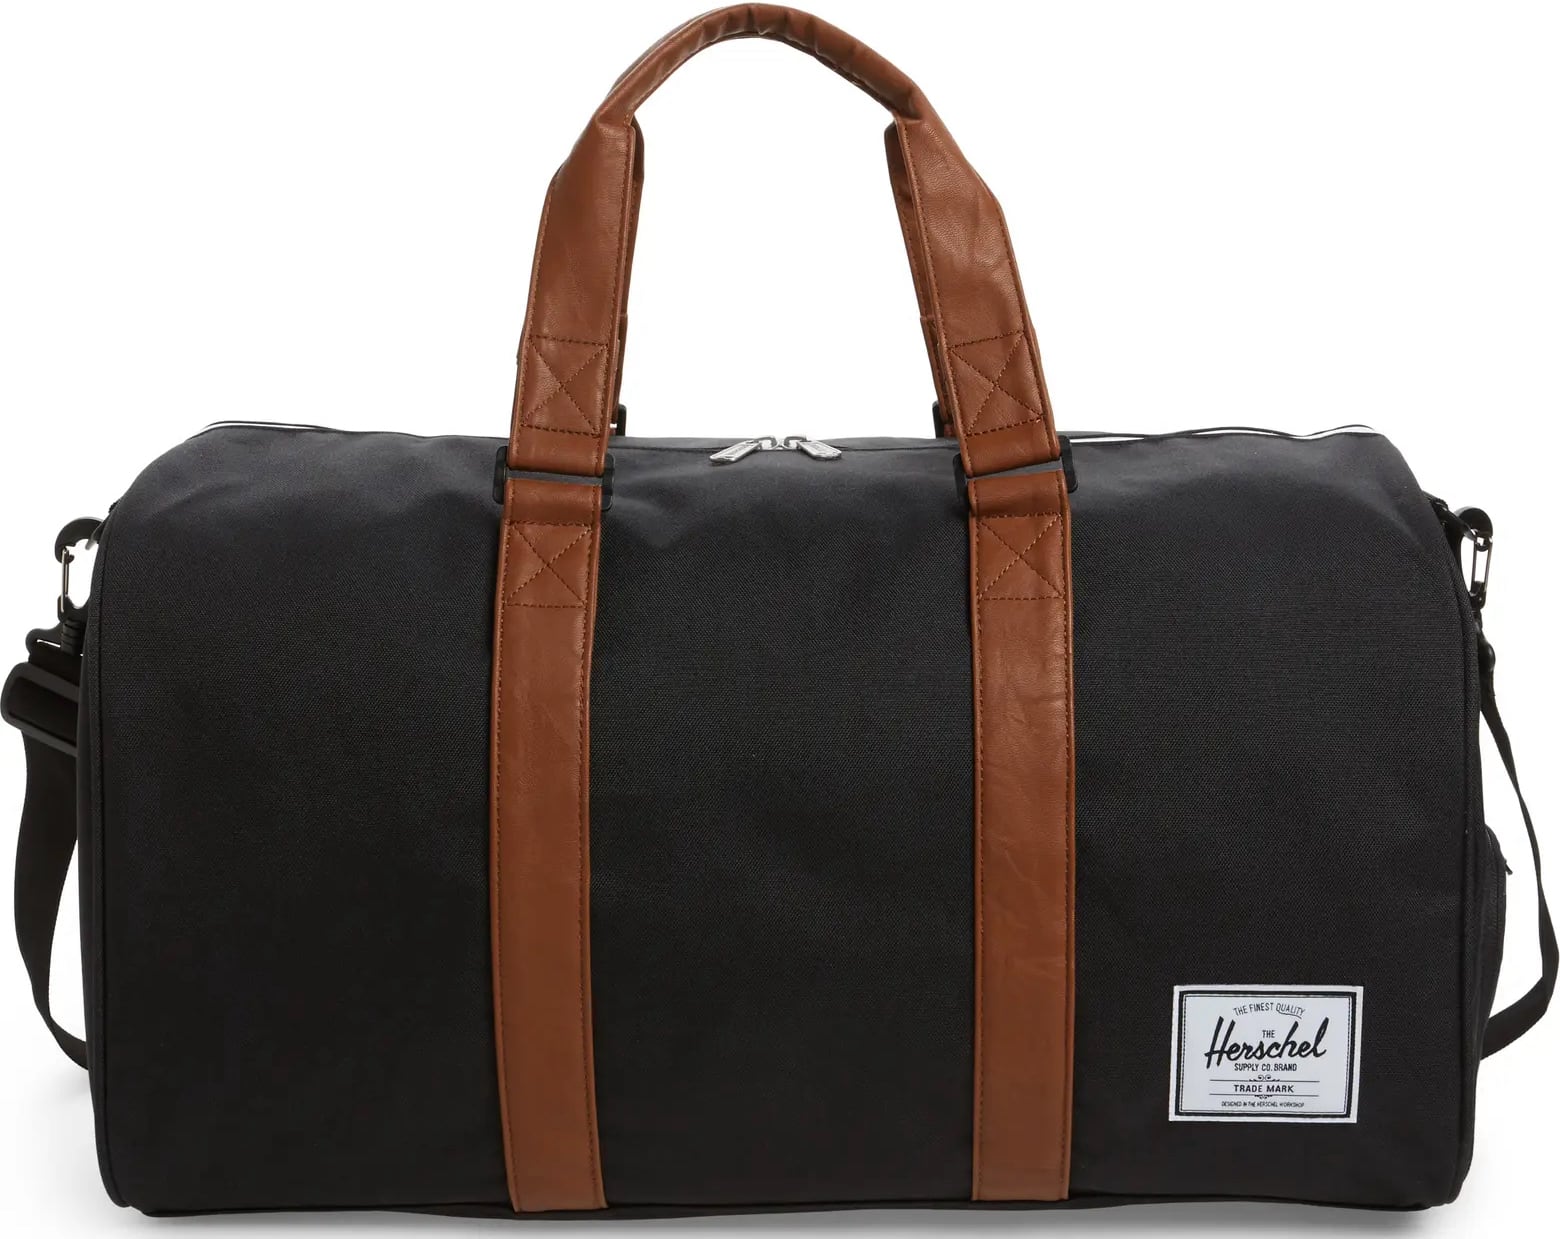 Black Herschel Supply Co. Duffle Bag 